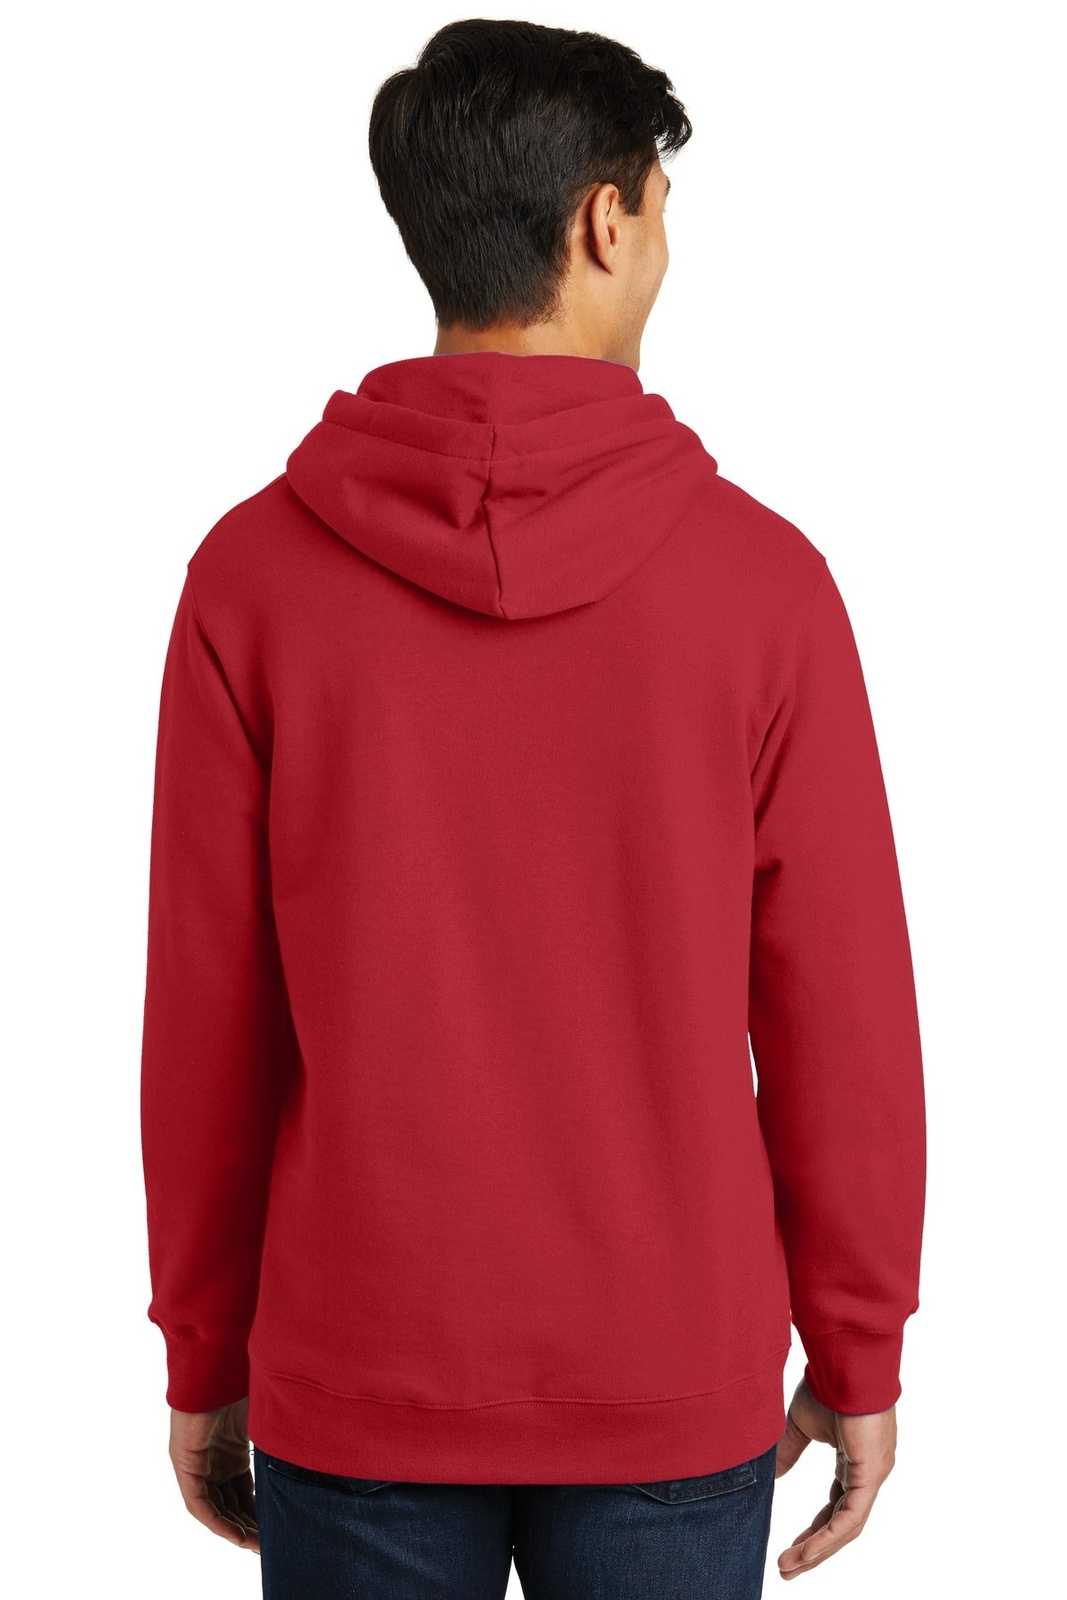 Port & Company PC850H Fan Favorite Fleece Pullover Hooded Sweatshirt - Team Cardinal - HIT a Double - 1